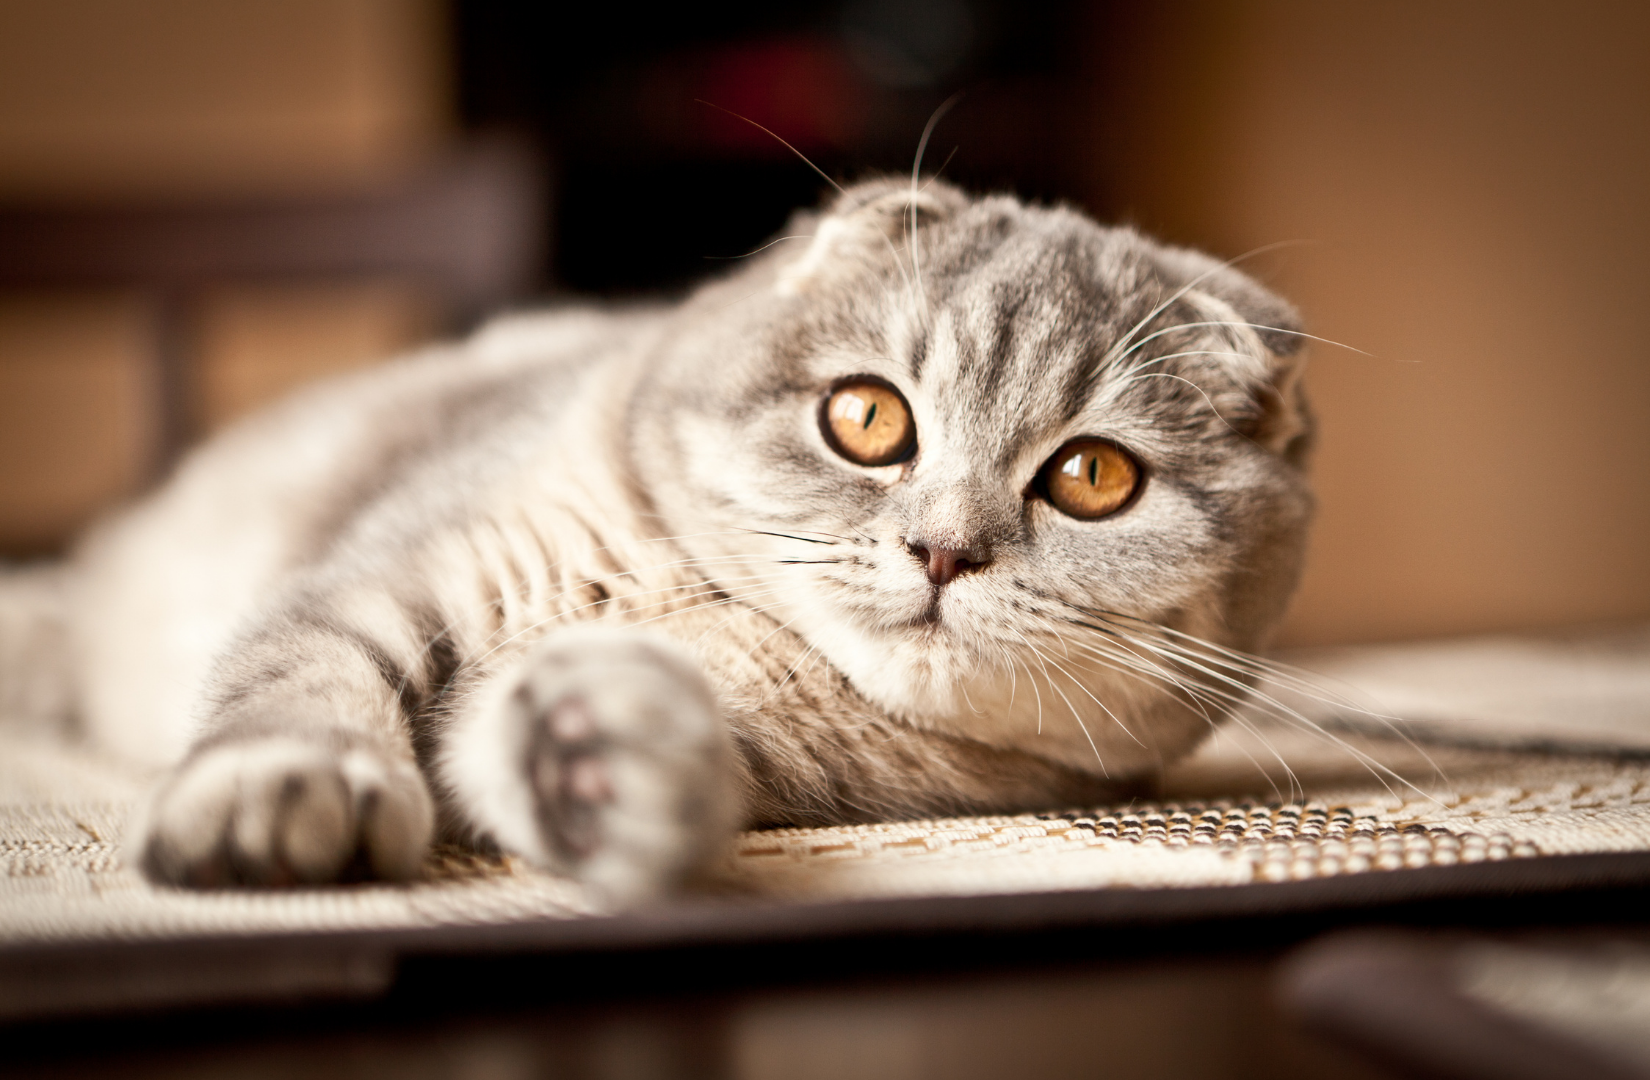 Рыжие британские котята ( фото) - фото - картинки и рисунки: скачать бесплатно